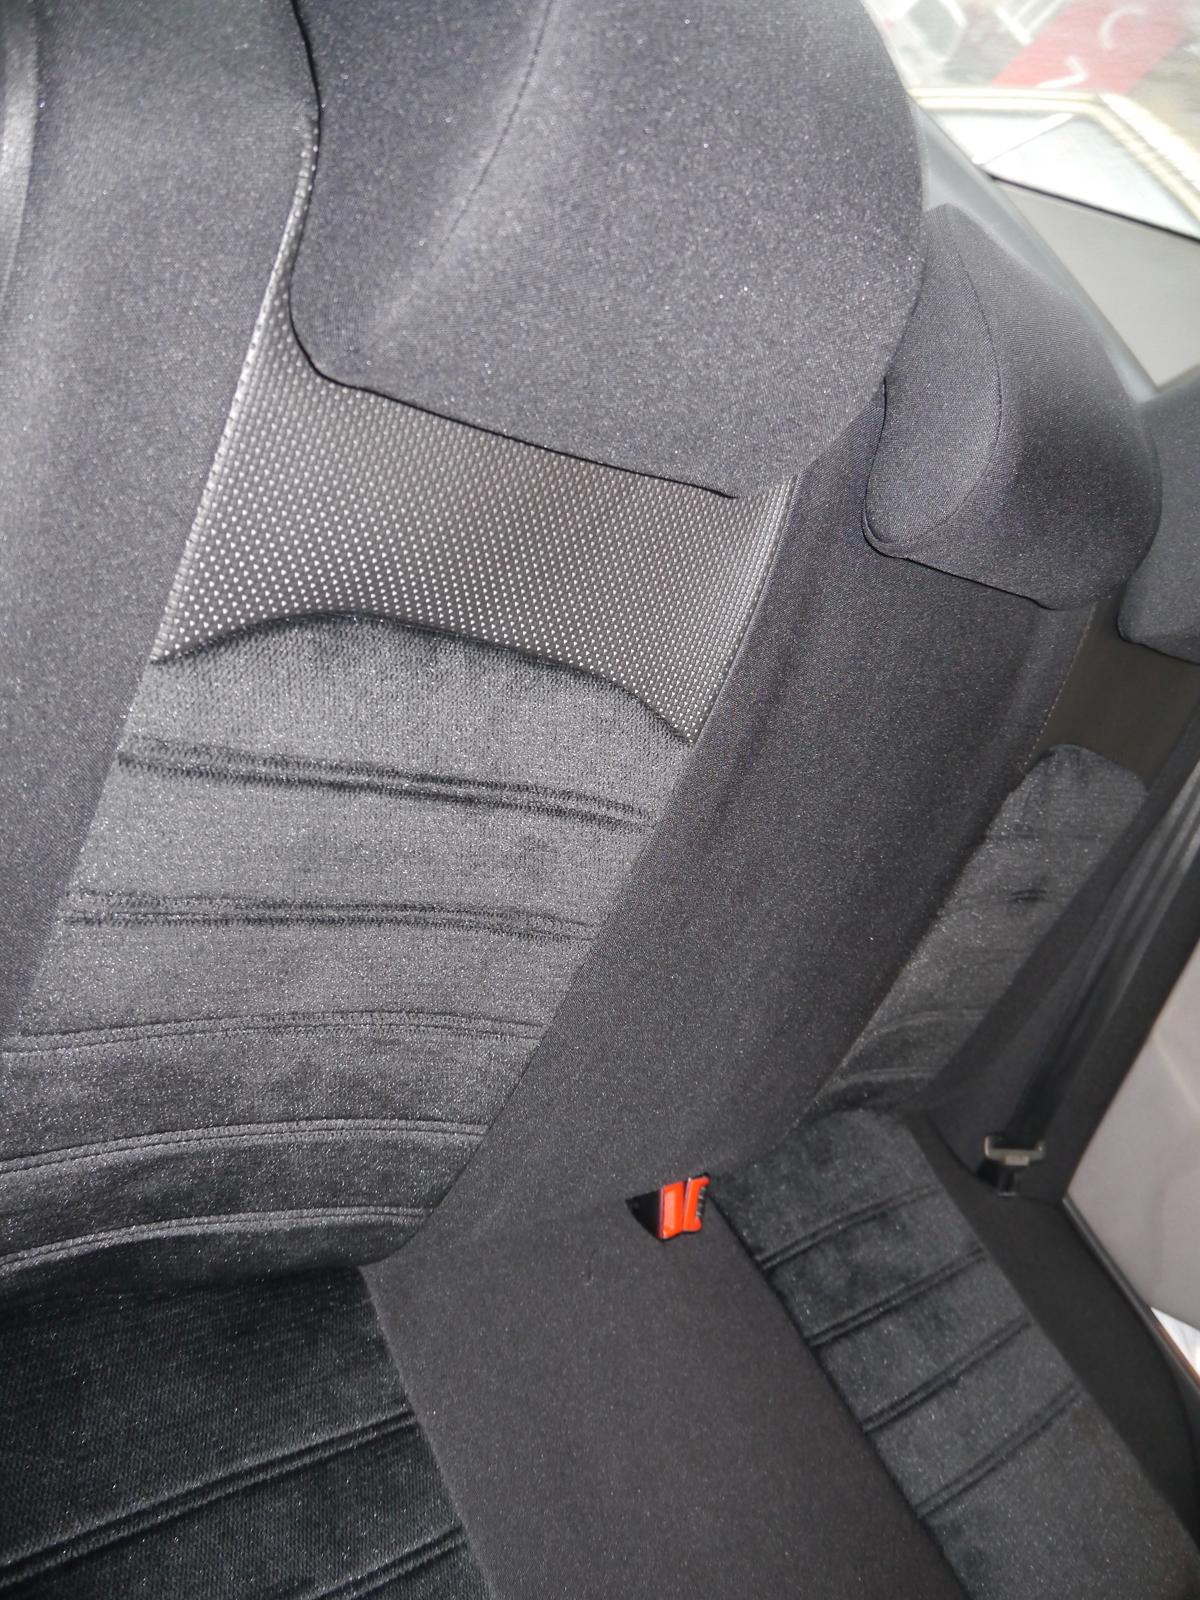 ASDDD Car Seat Covers für Volkswagen VW Golf 7 Variant/Golf Variant R  R-Line Wagon Tailored PU Leder Wasserdicht Full Sets Autositzbezüge  Sitzbezug Kissen Protection Interior Zubehör: : Auto & Motorrad